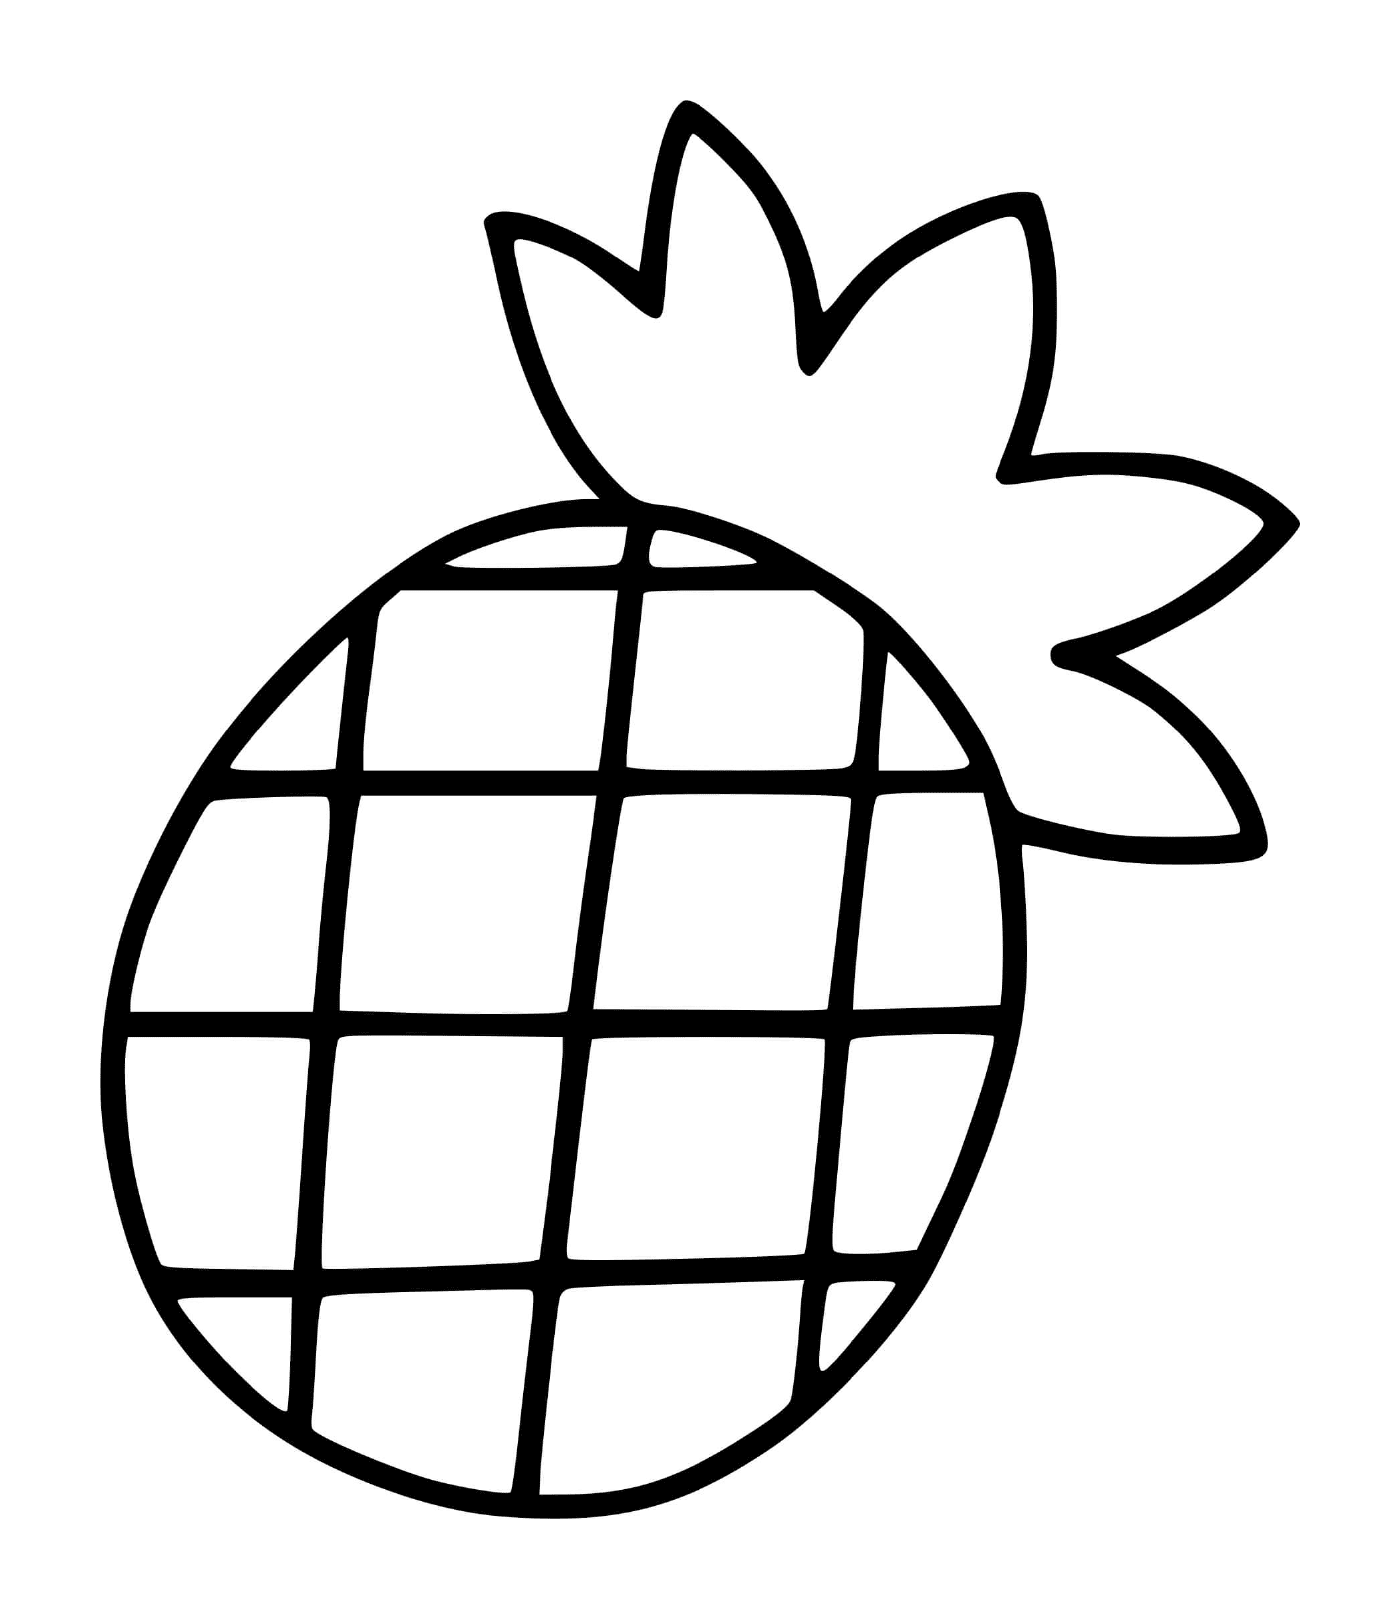  An easy pineapple for preschool children 